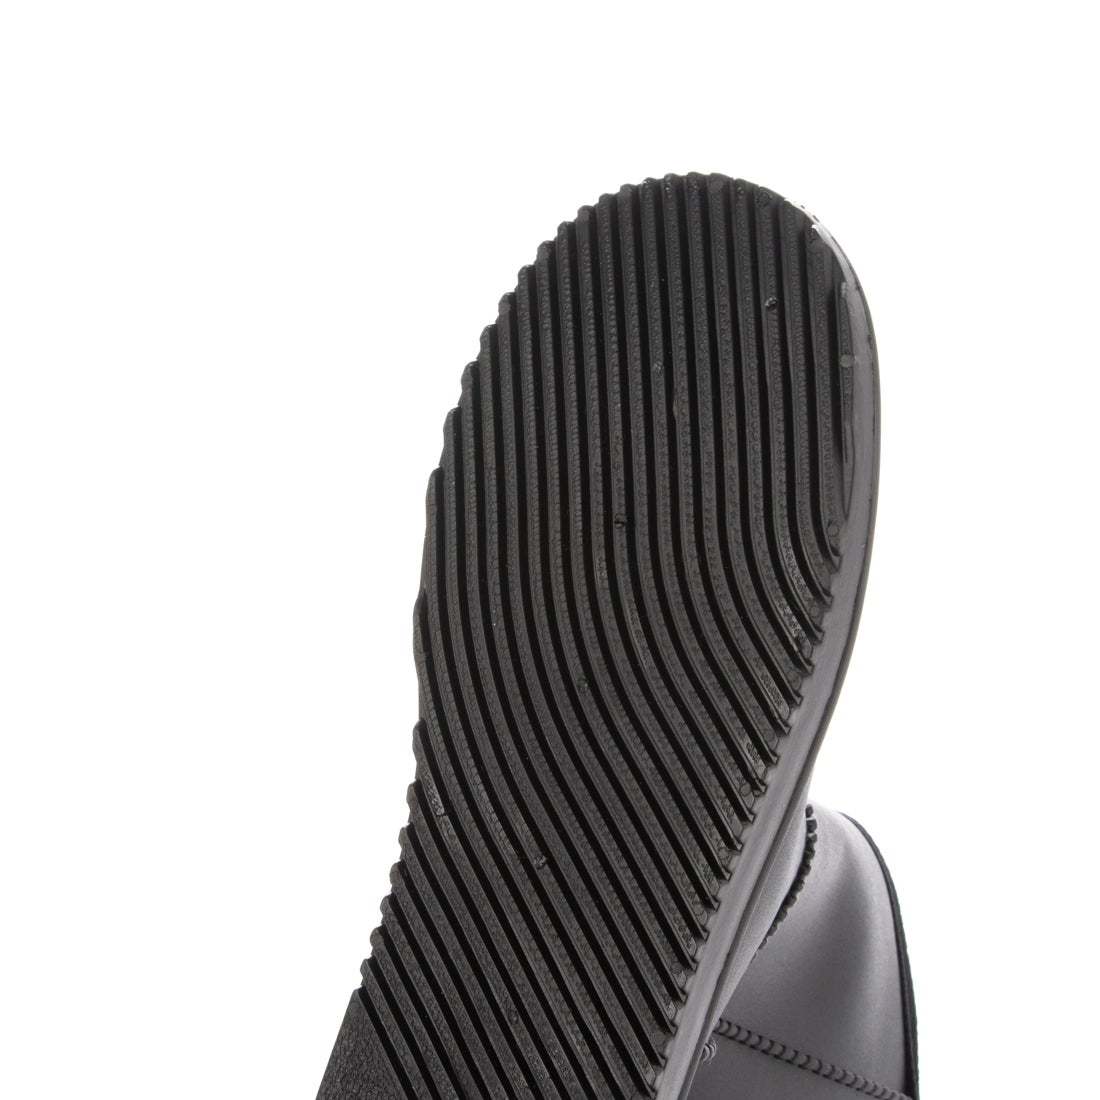 防寒ブーツ　ムートンブーツ　防寒防水ブーツ　新品『21076-BLK-240』24.0cm　メンズ、レディース、キッズのファミリーサイズ。